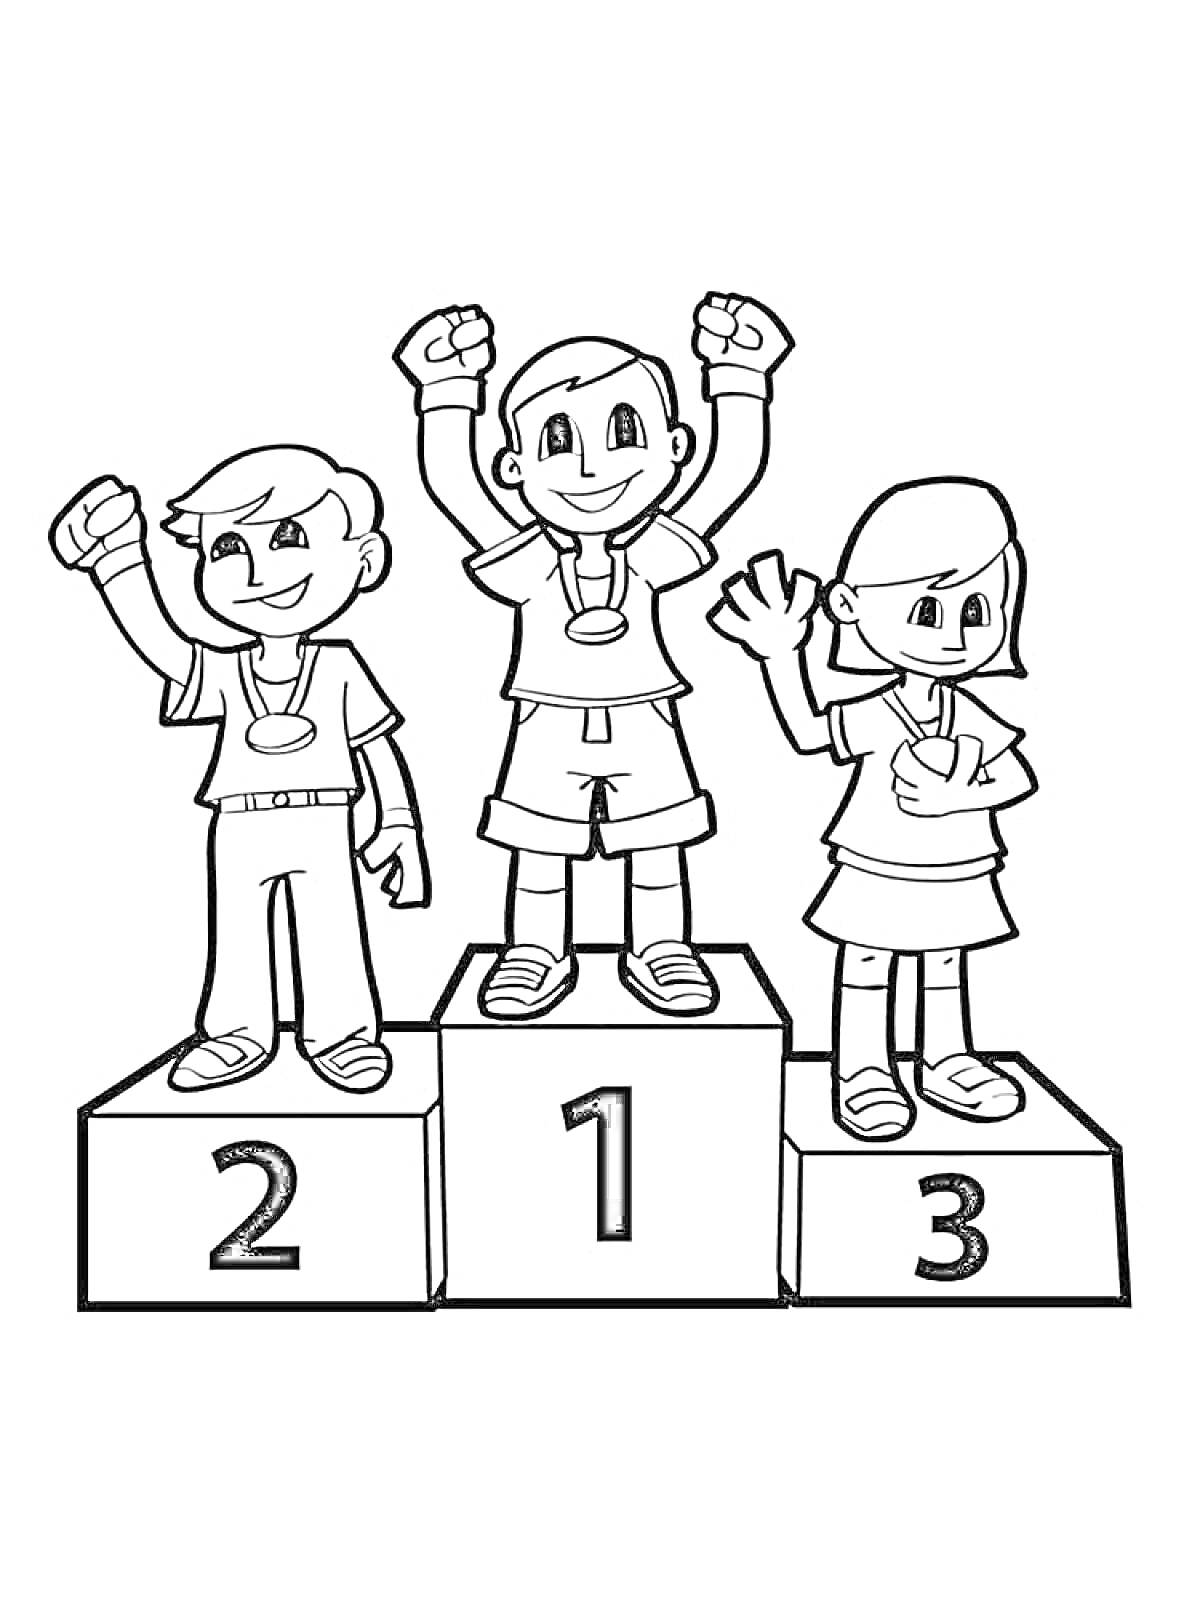 Раскраска Трое детей на пьедестале почета с медалями